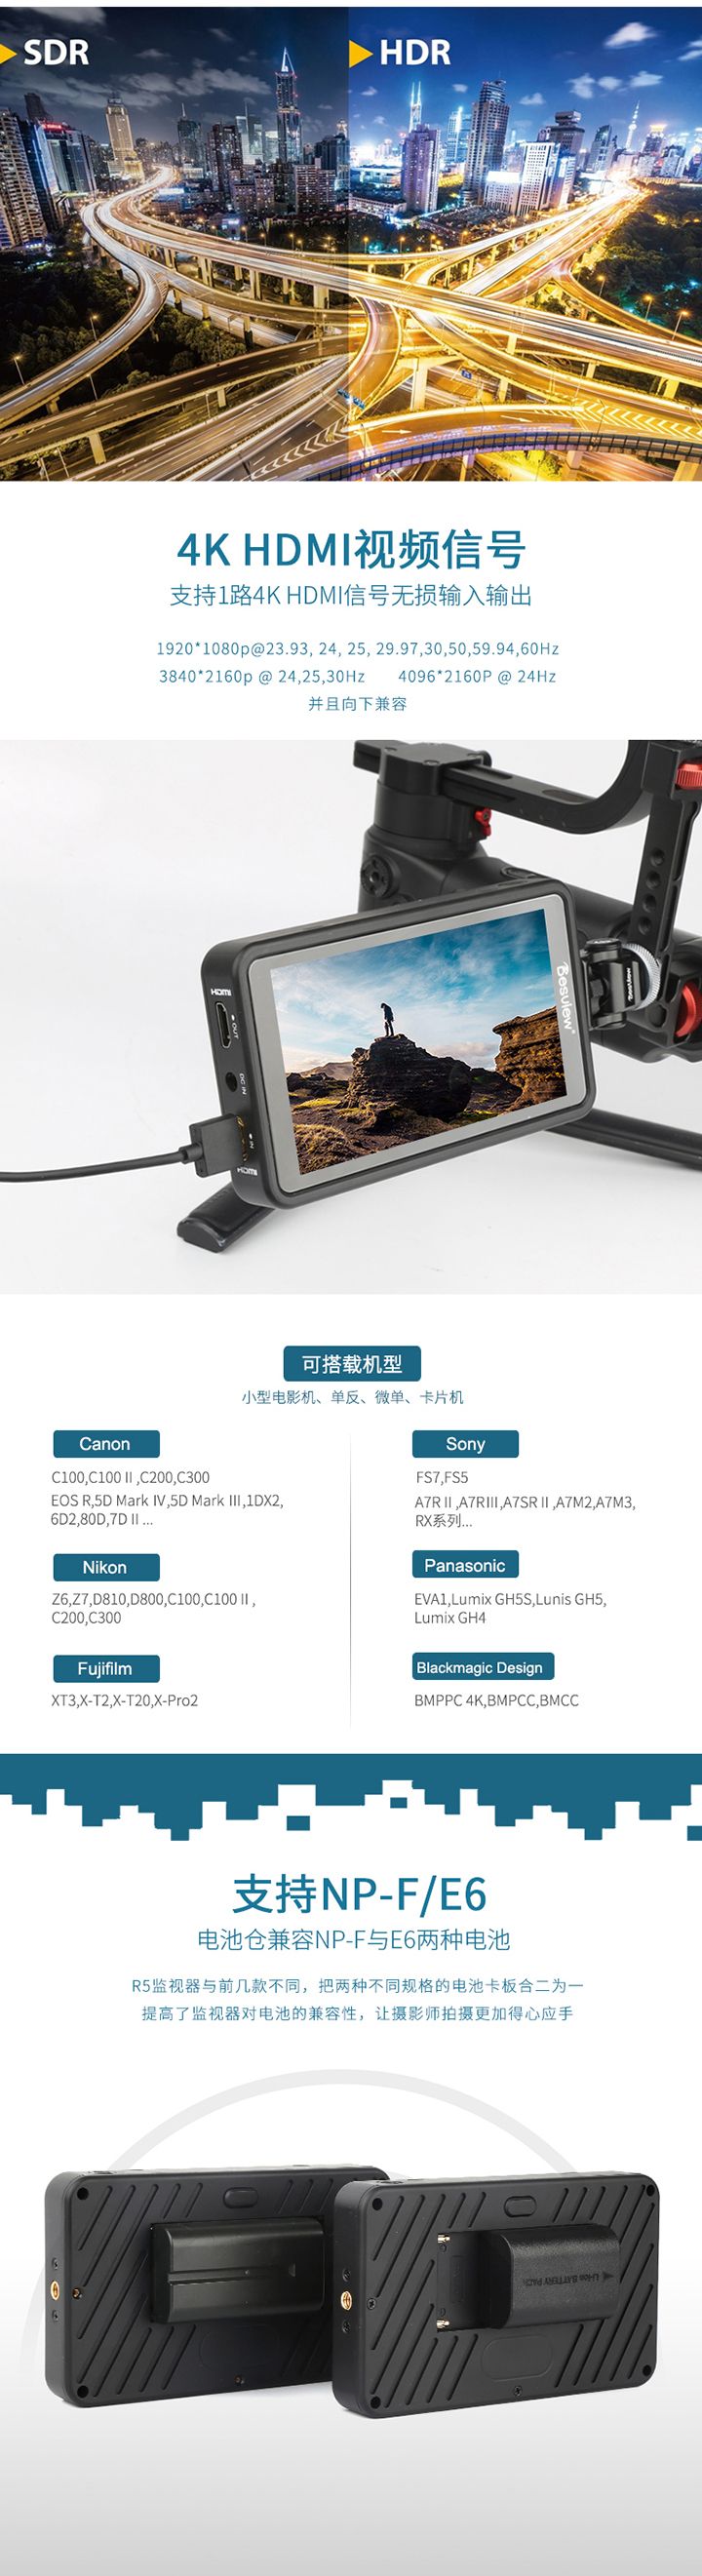 百视悦摄影监视器R5免费试用,评测